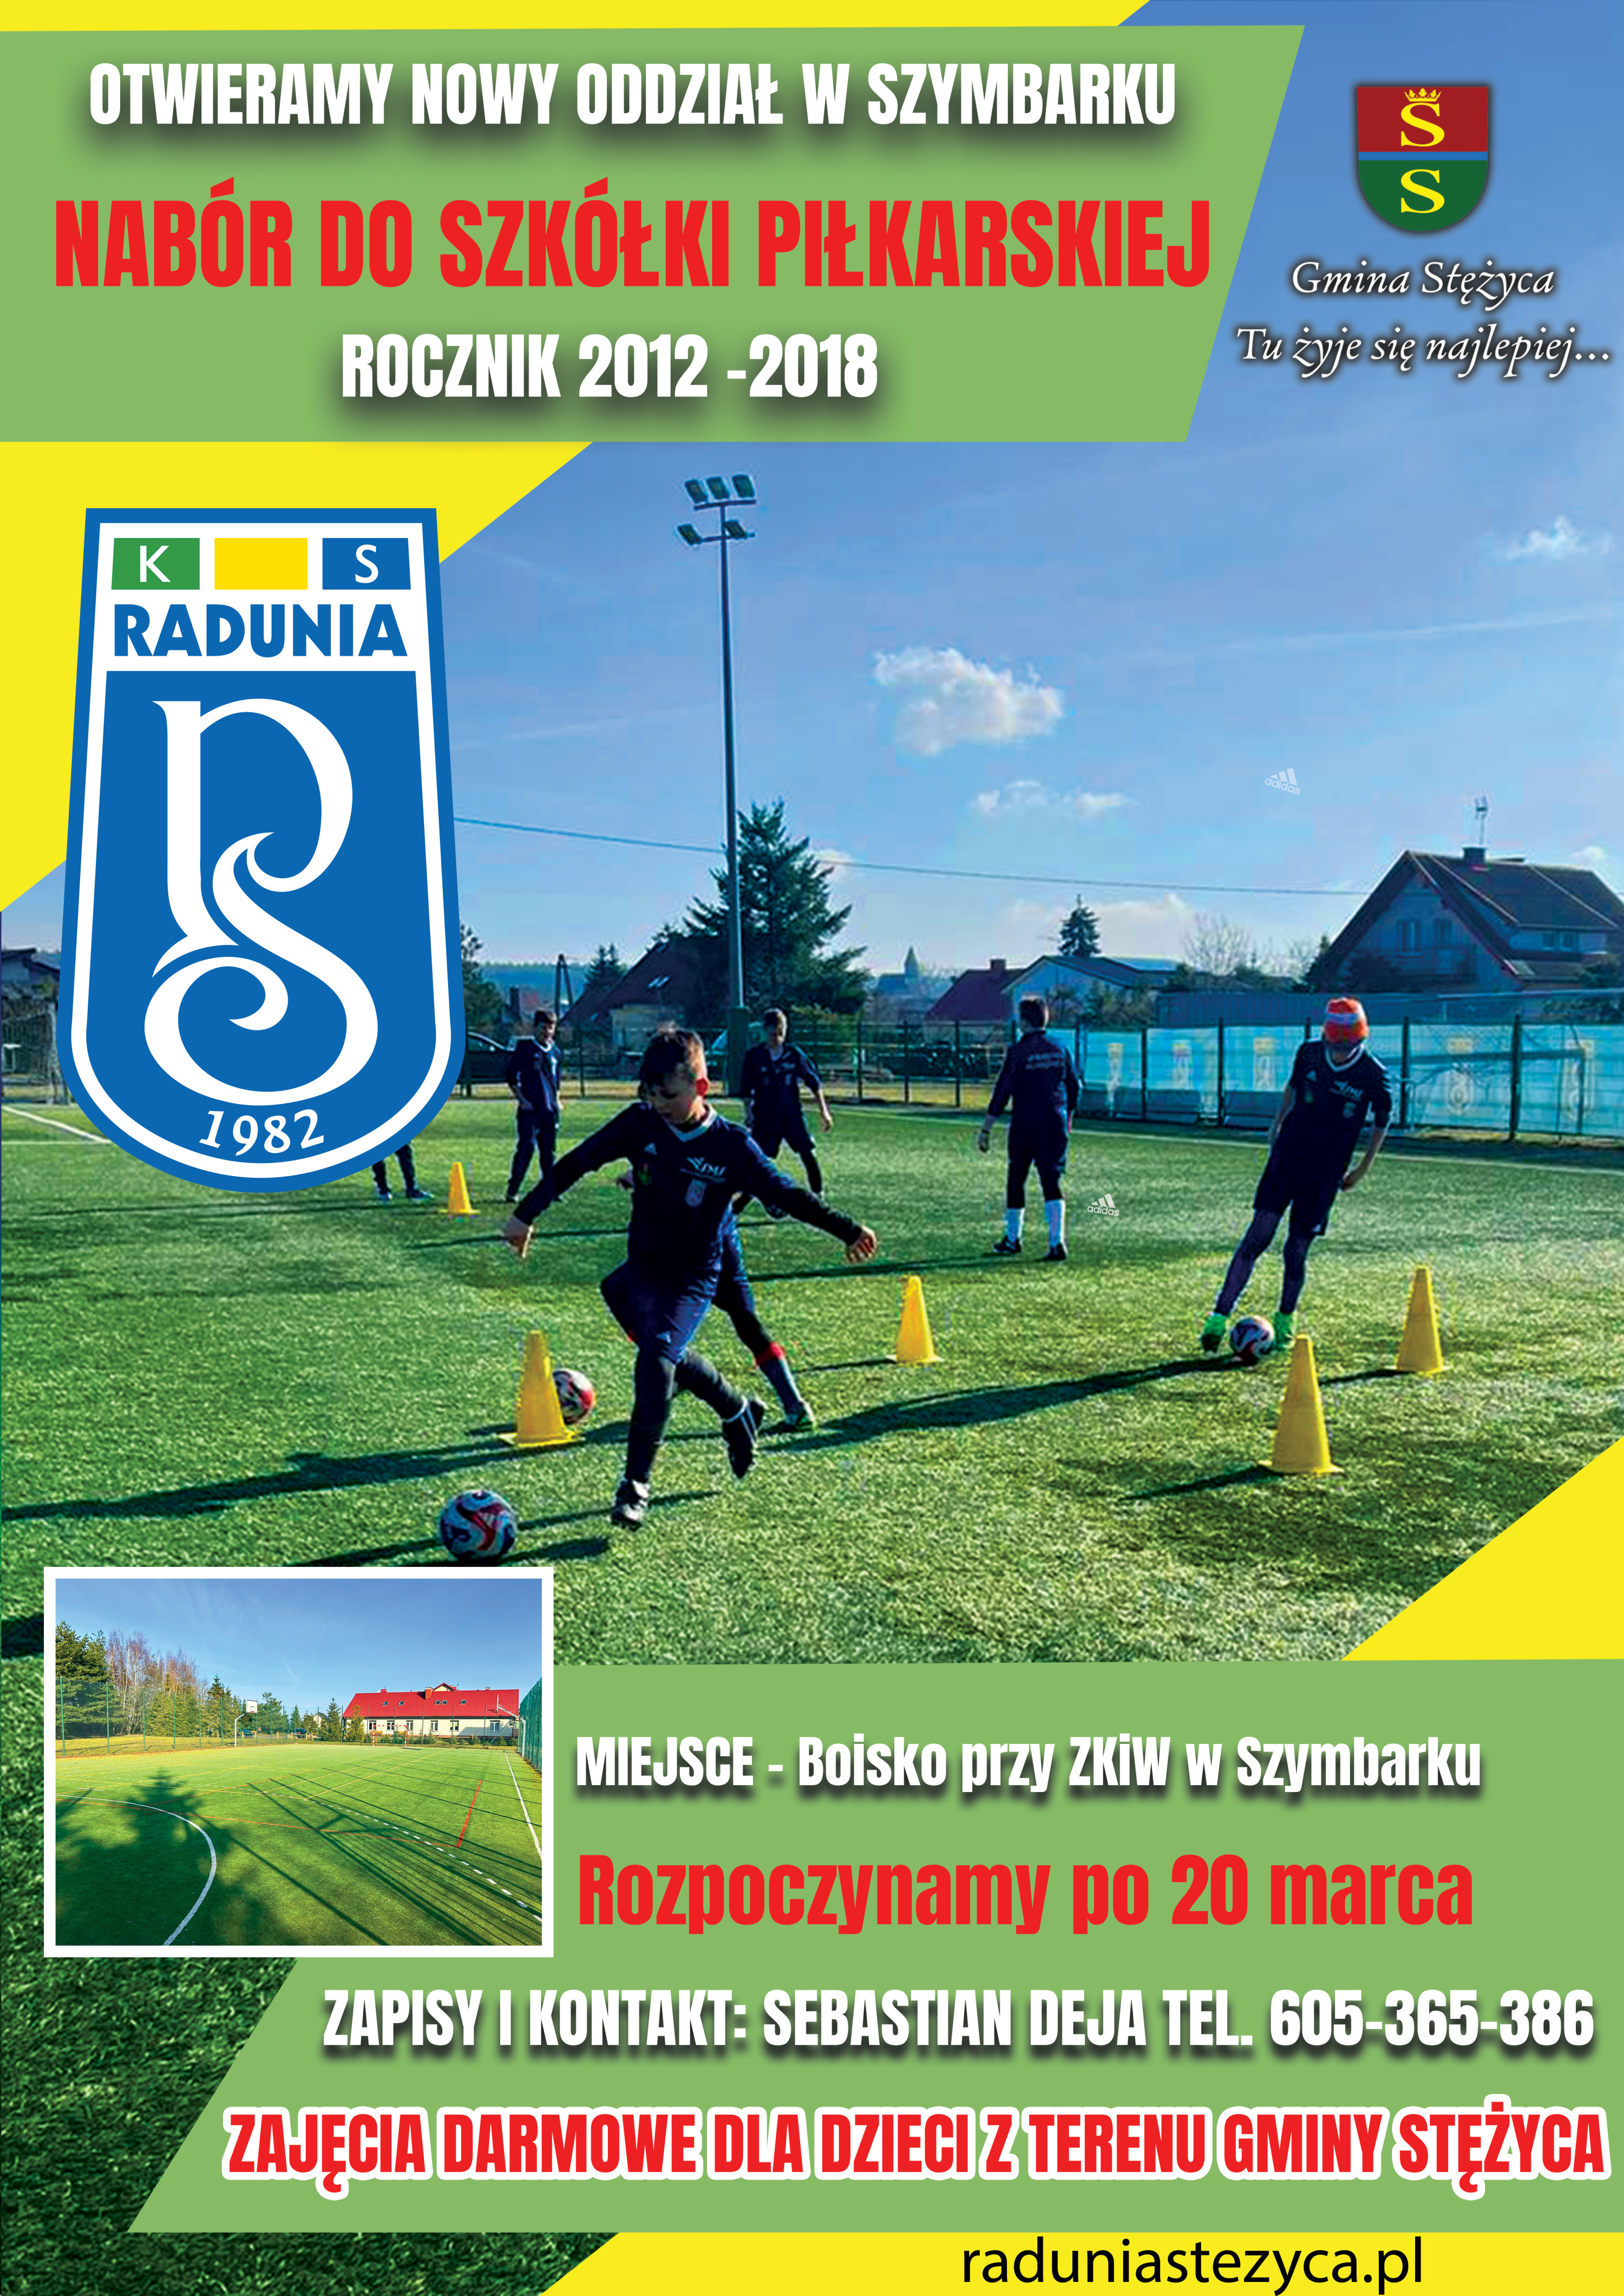 Otwieramy nowy oddział w Szymbarku - Nabór do szkółki piłkarskiej rocznik 2012-2018